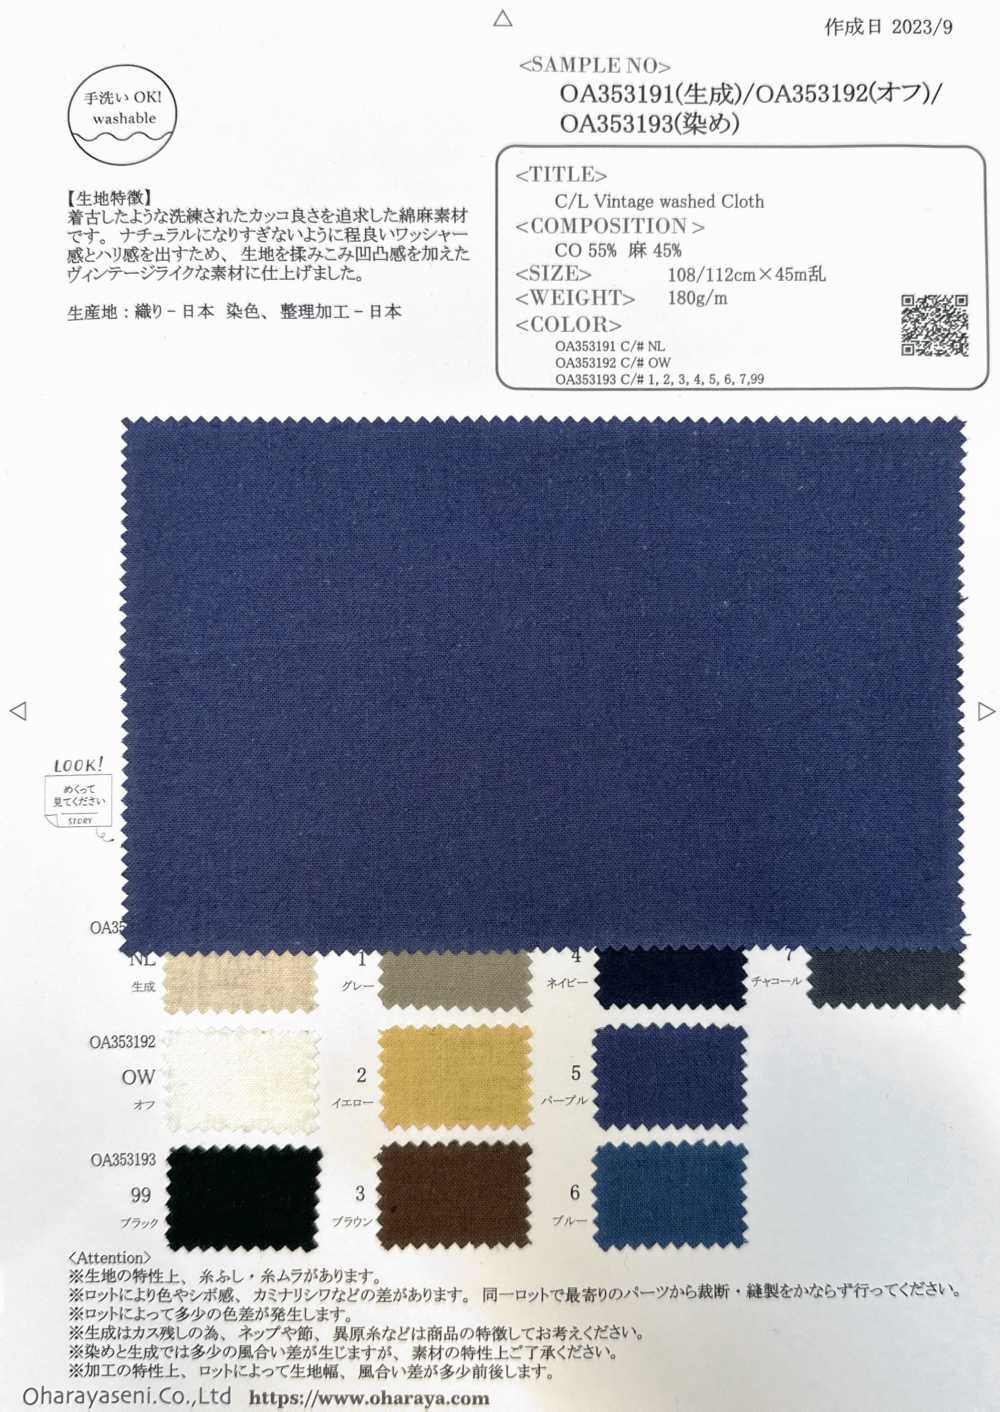 OA353193 C/L Vintage Washed Cloth[Textile / Fabric] Oharayaseni